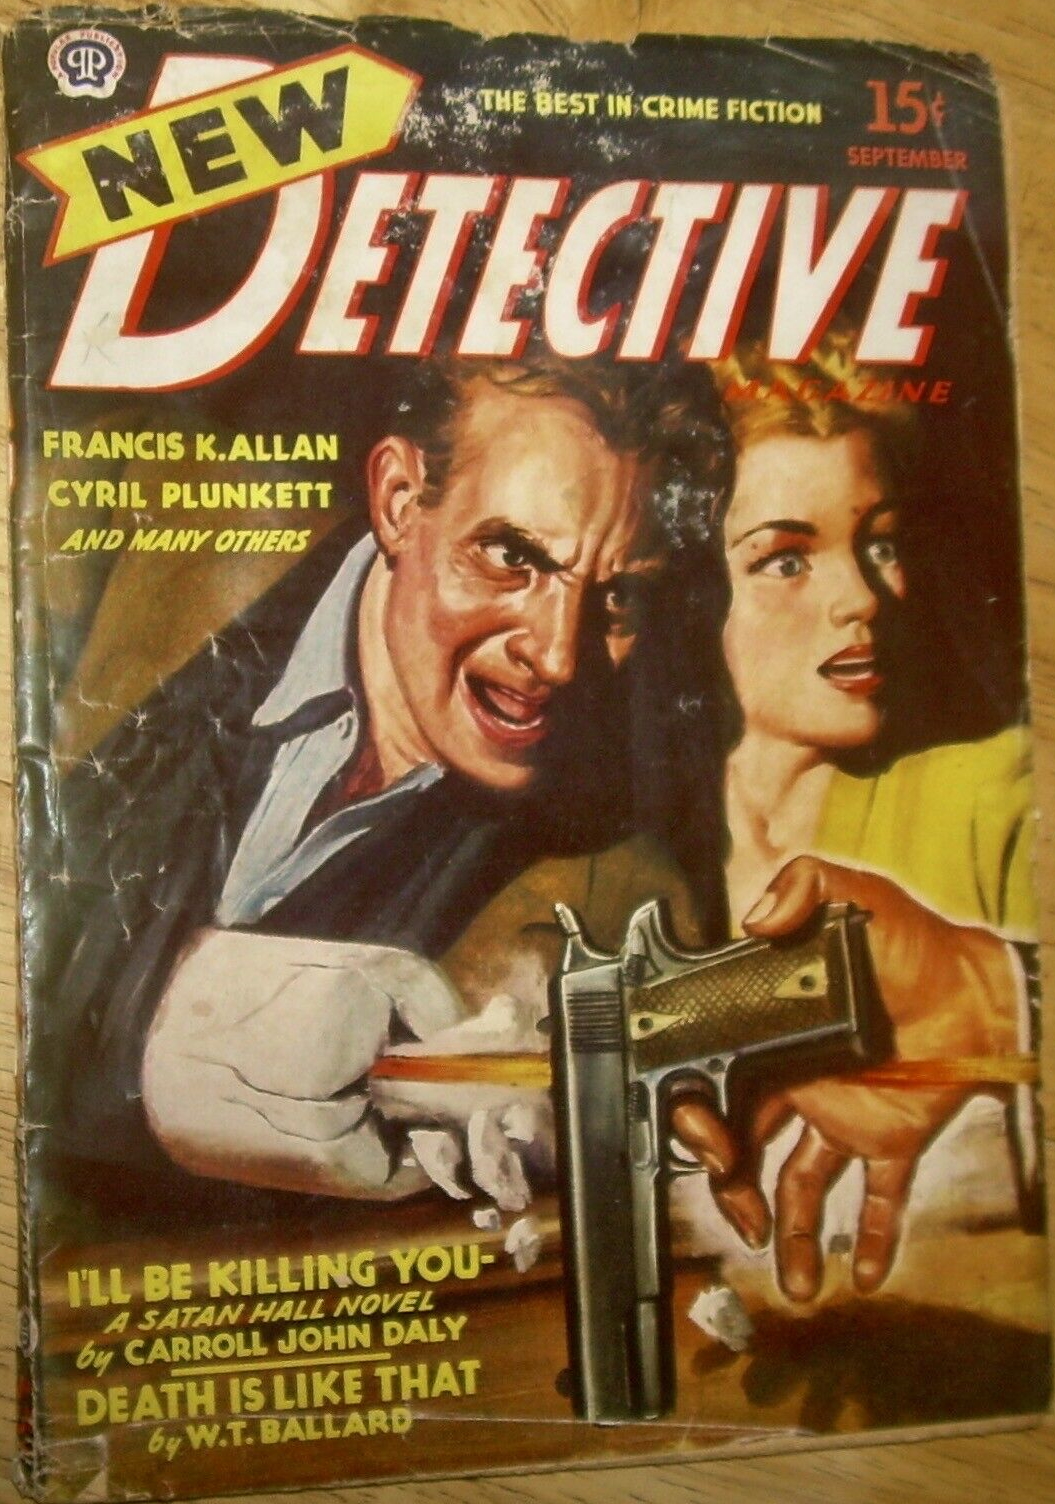 New Detective - September 1945